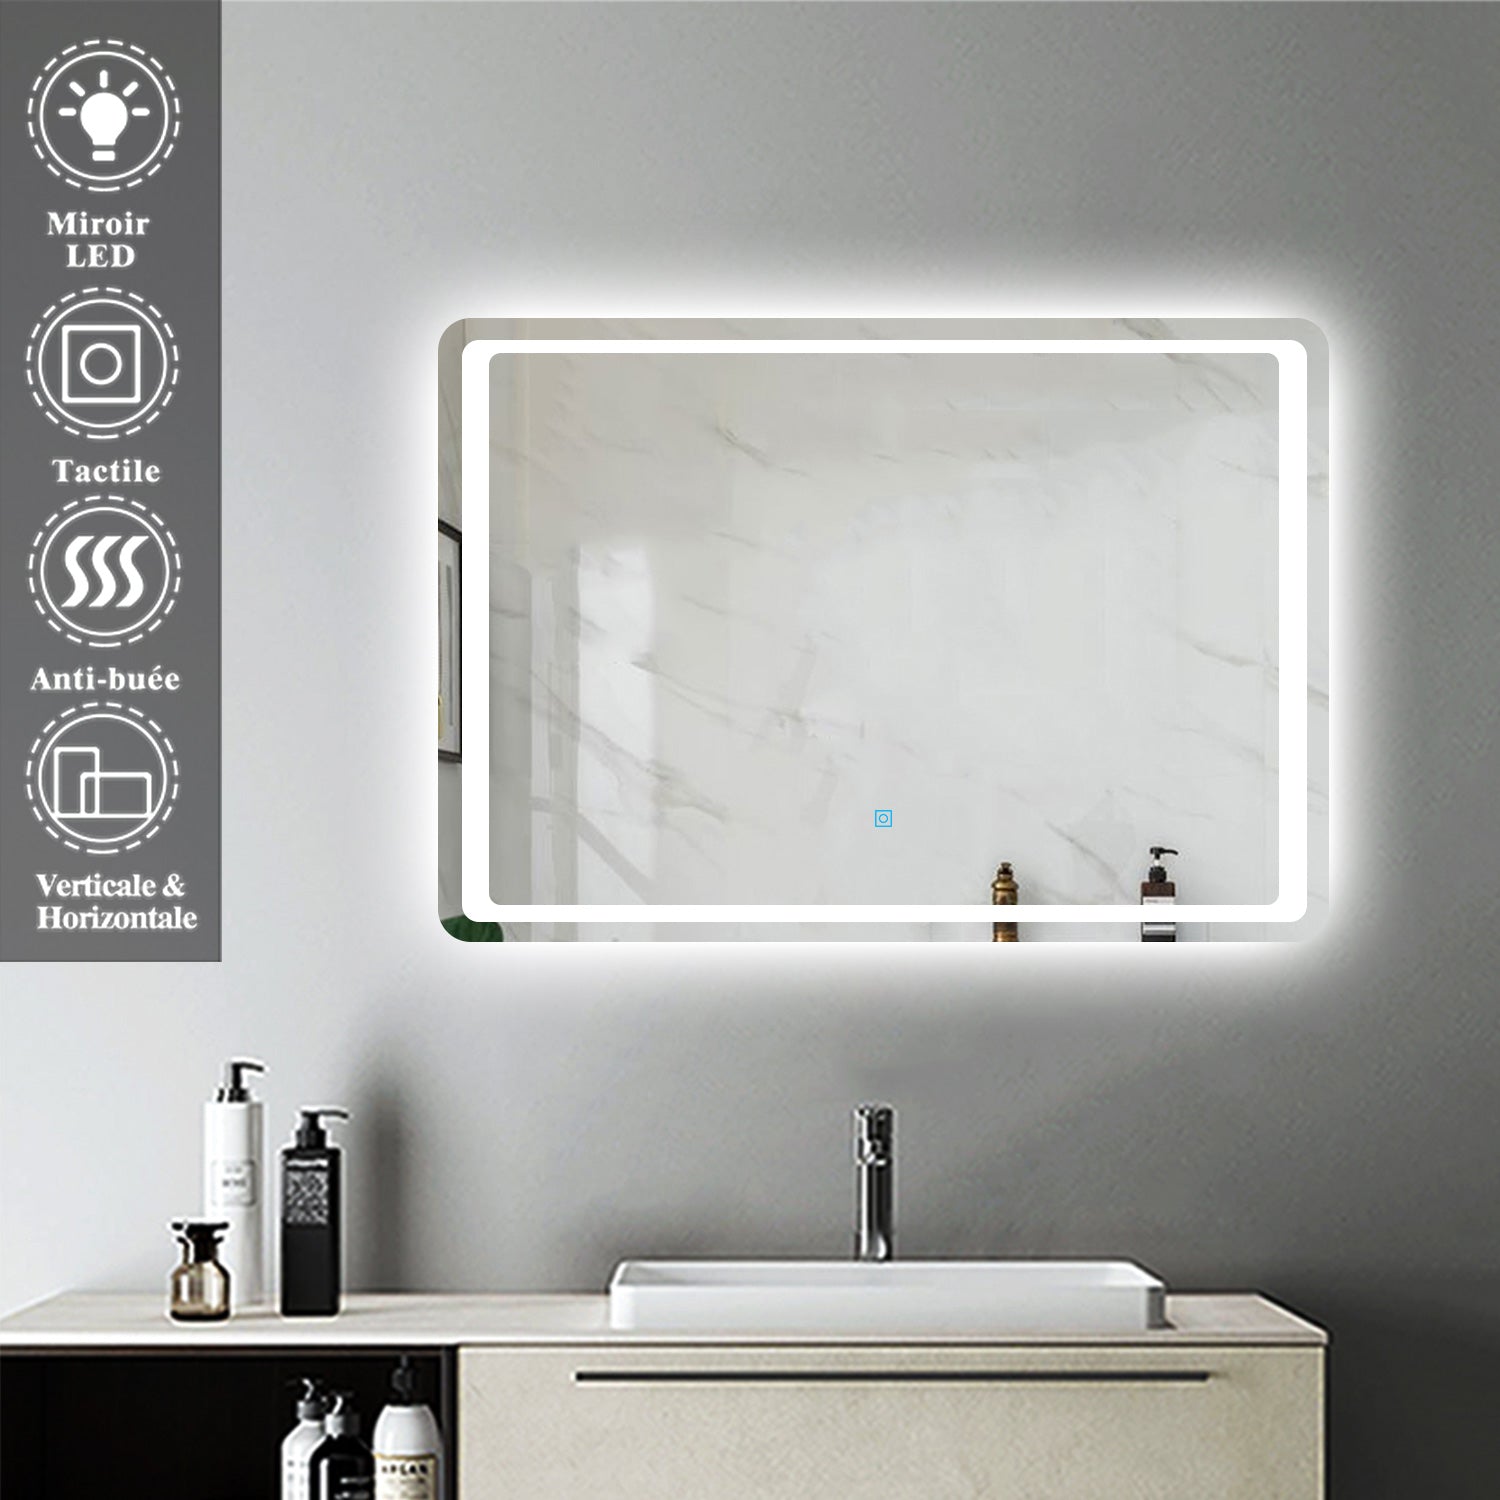 Miroir Mural de Salle de Bain modèle standard, éclairage LED intégré, interrupteur tactile avec anti-buée -Livraison gratuite